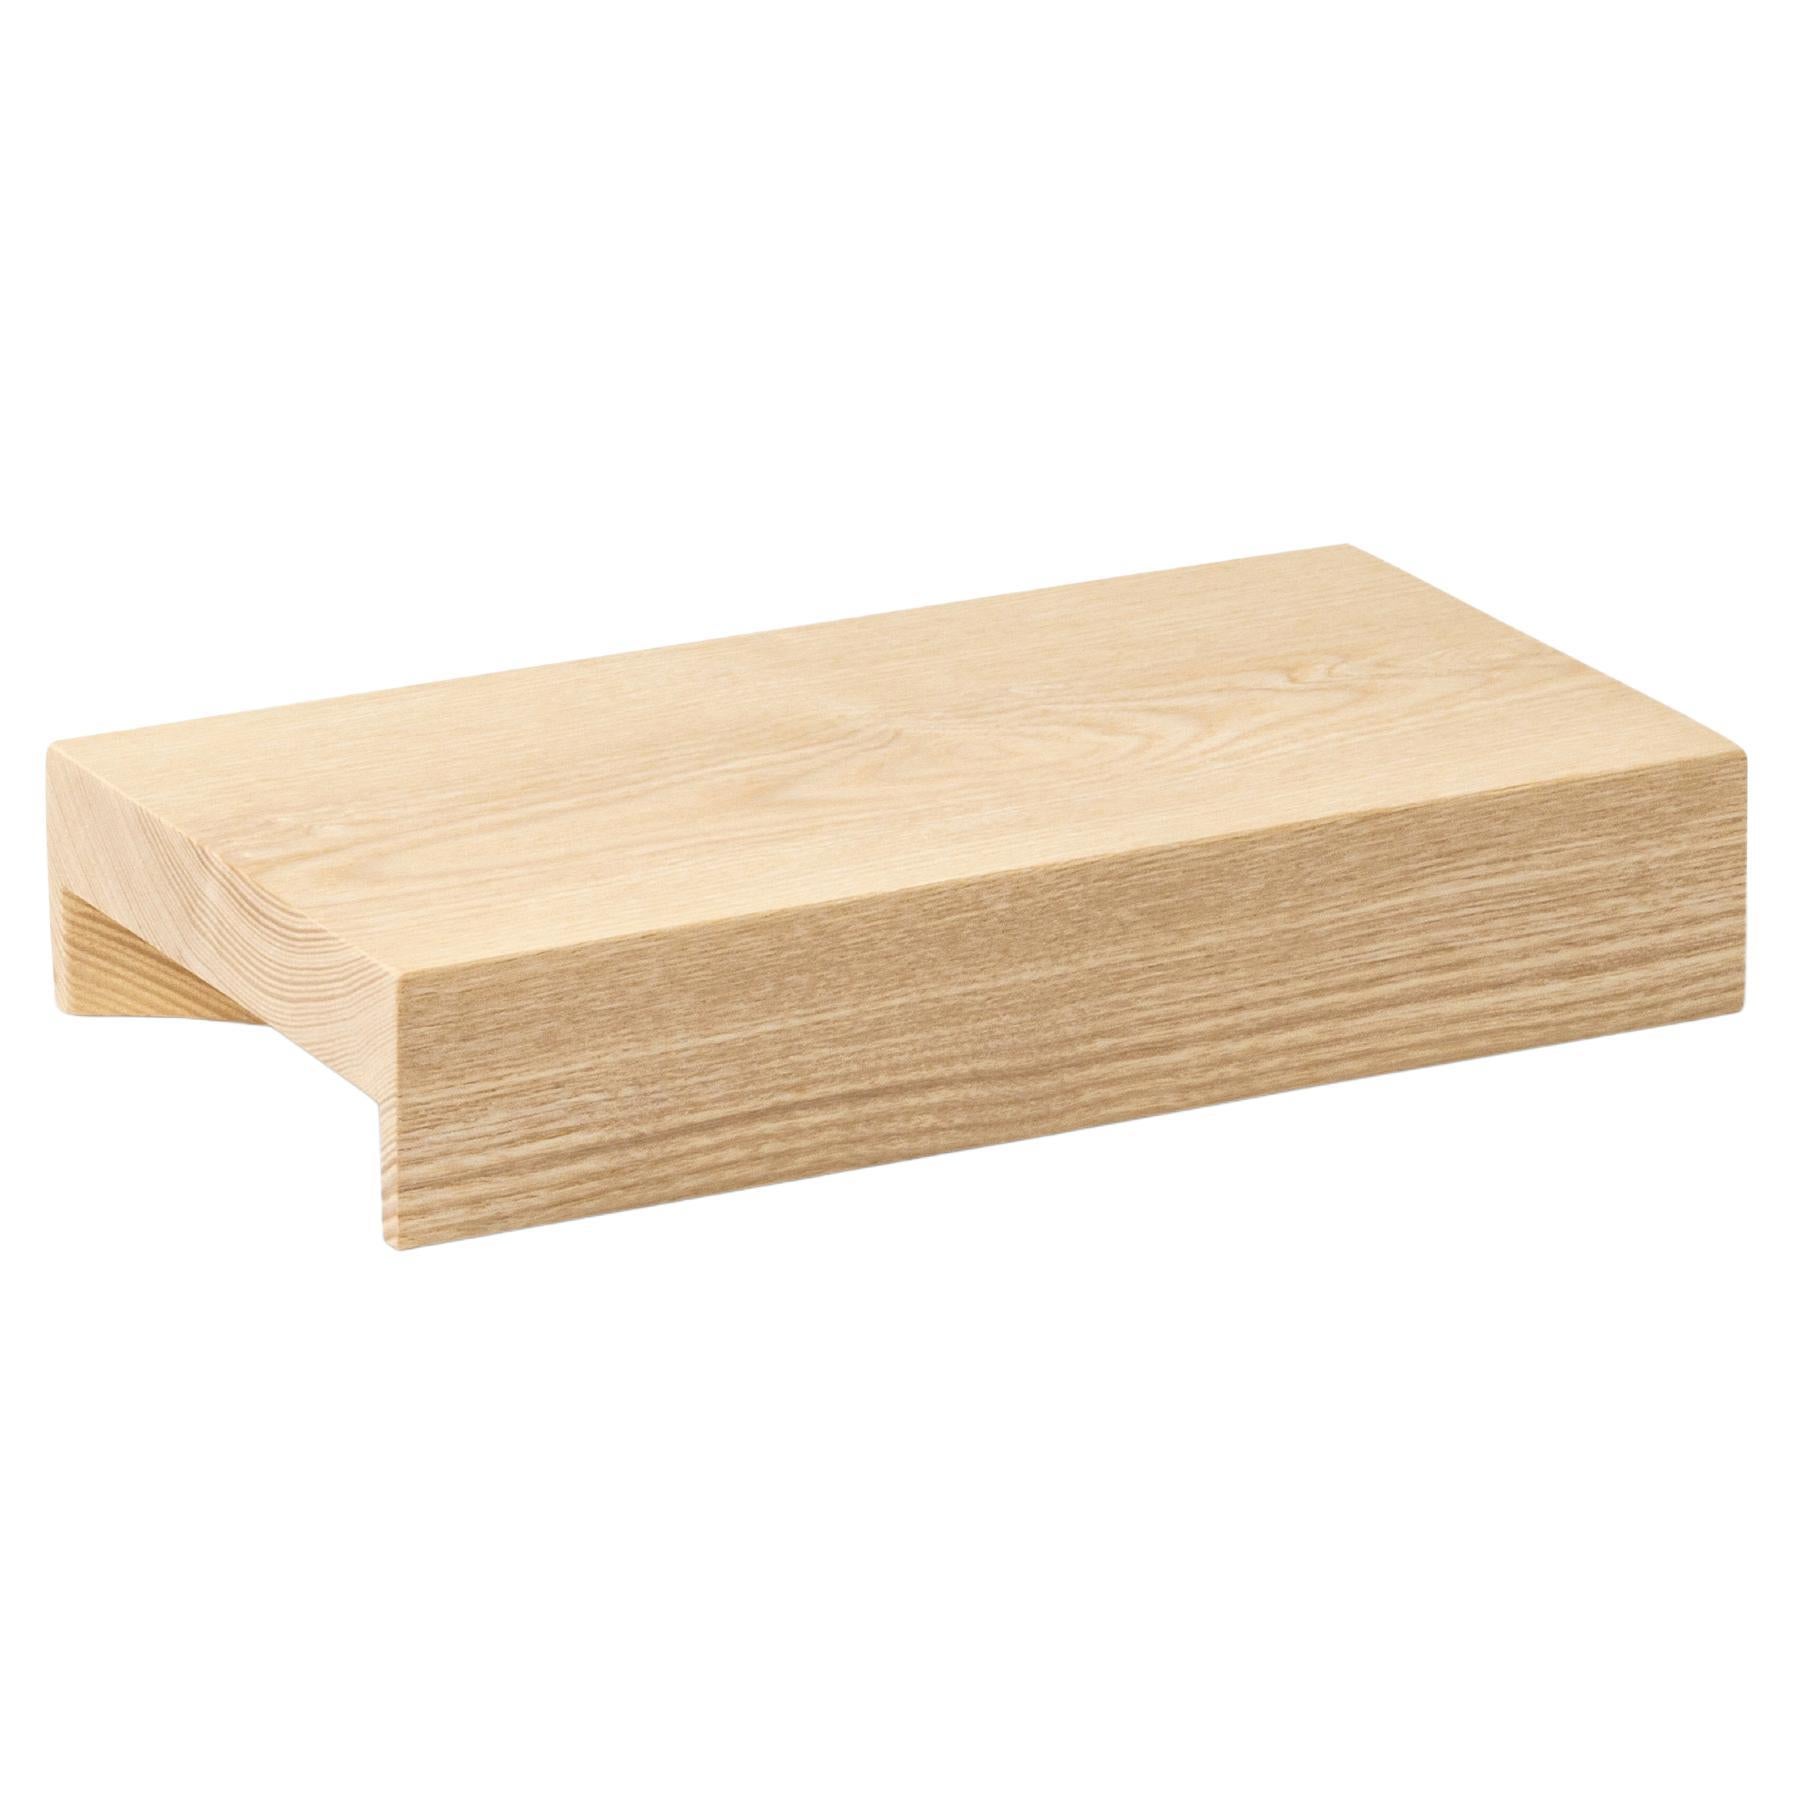 Minimalist Wood Tray Medium